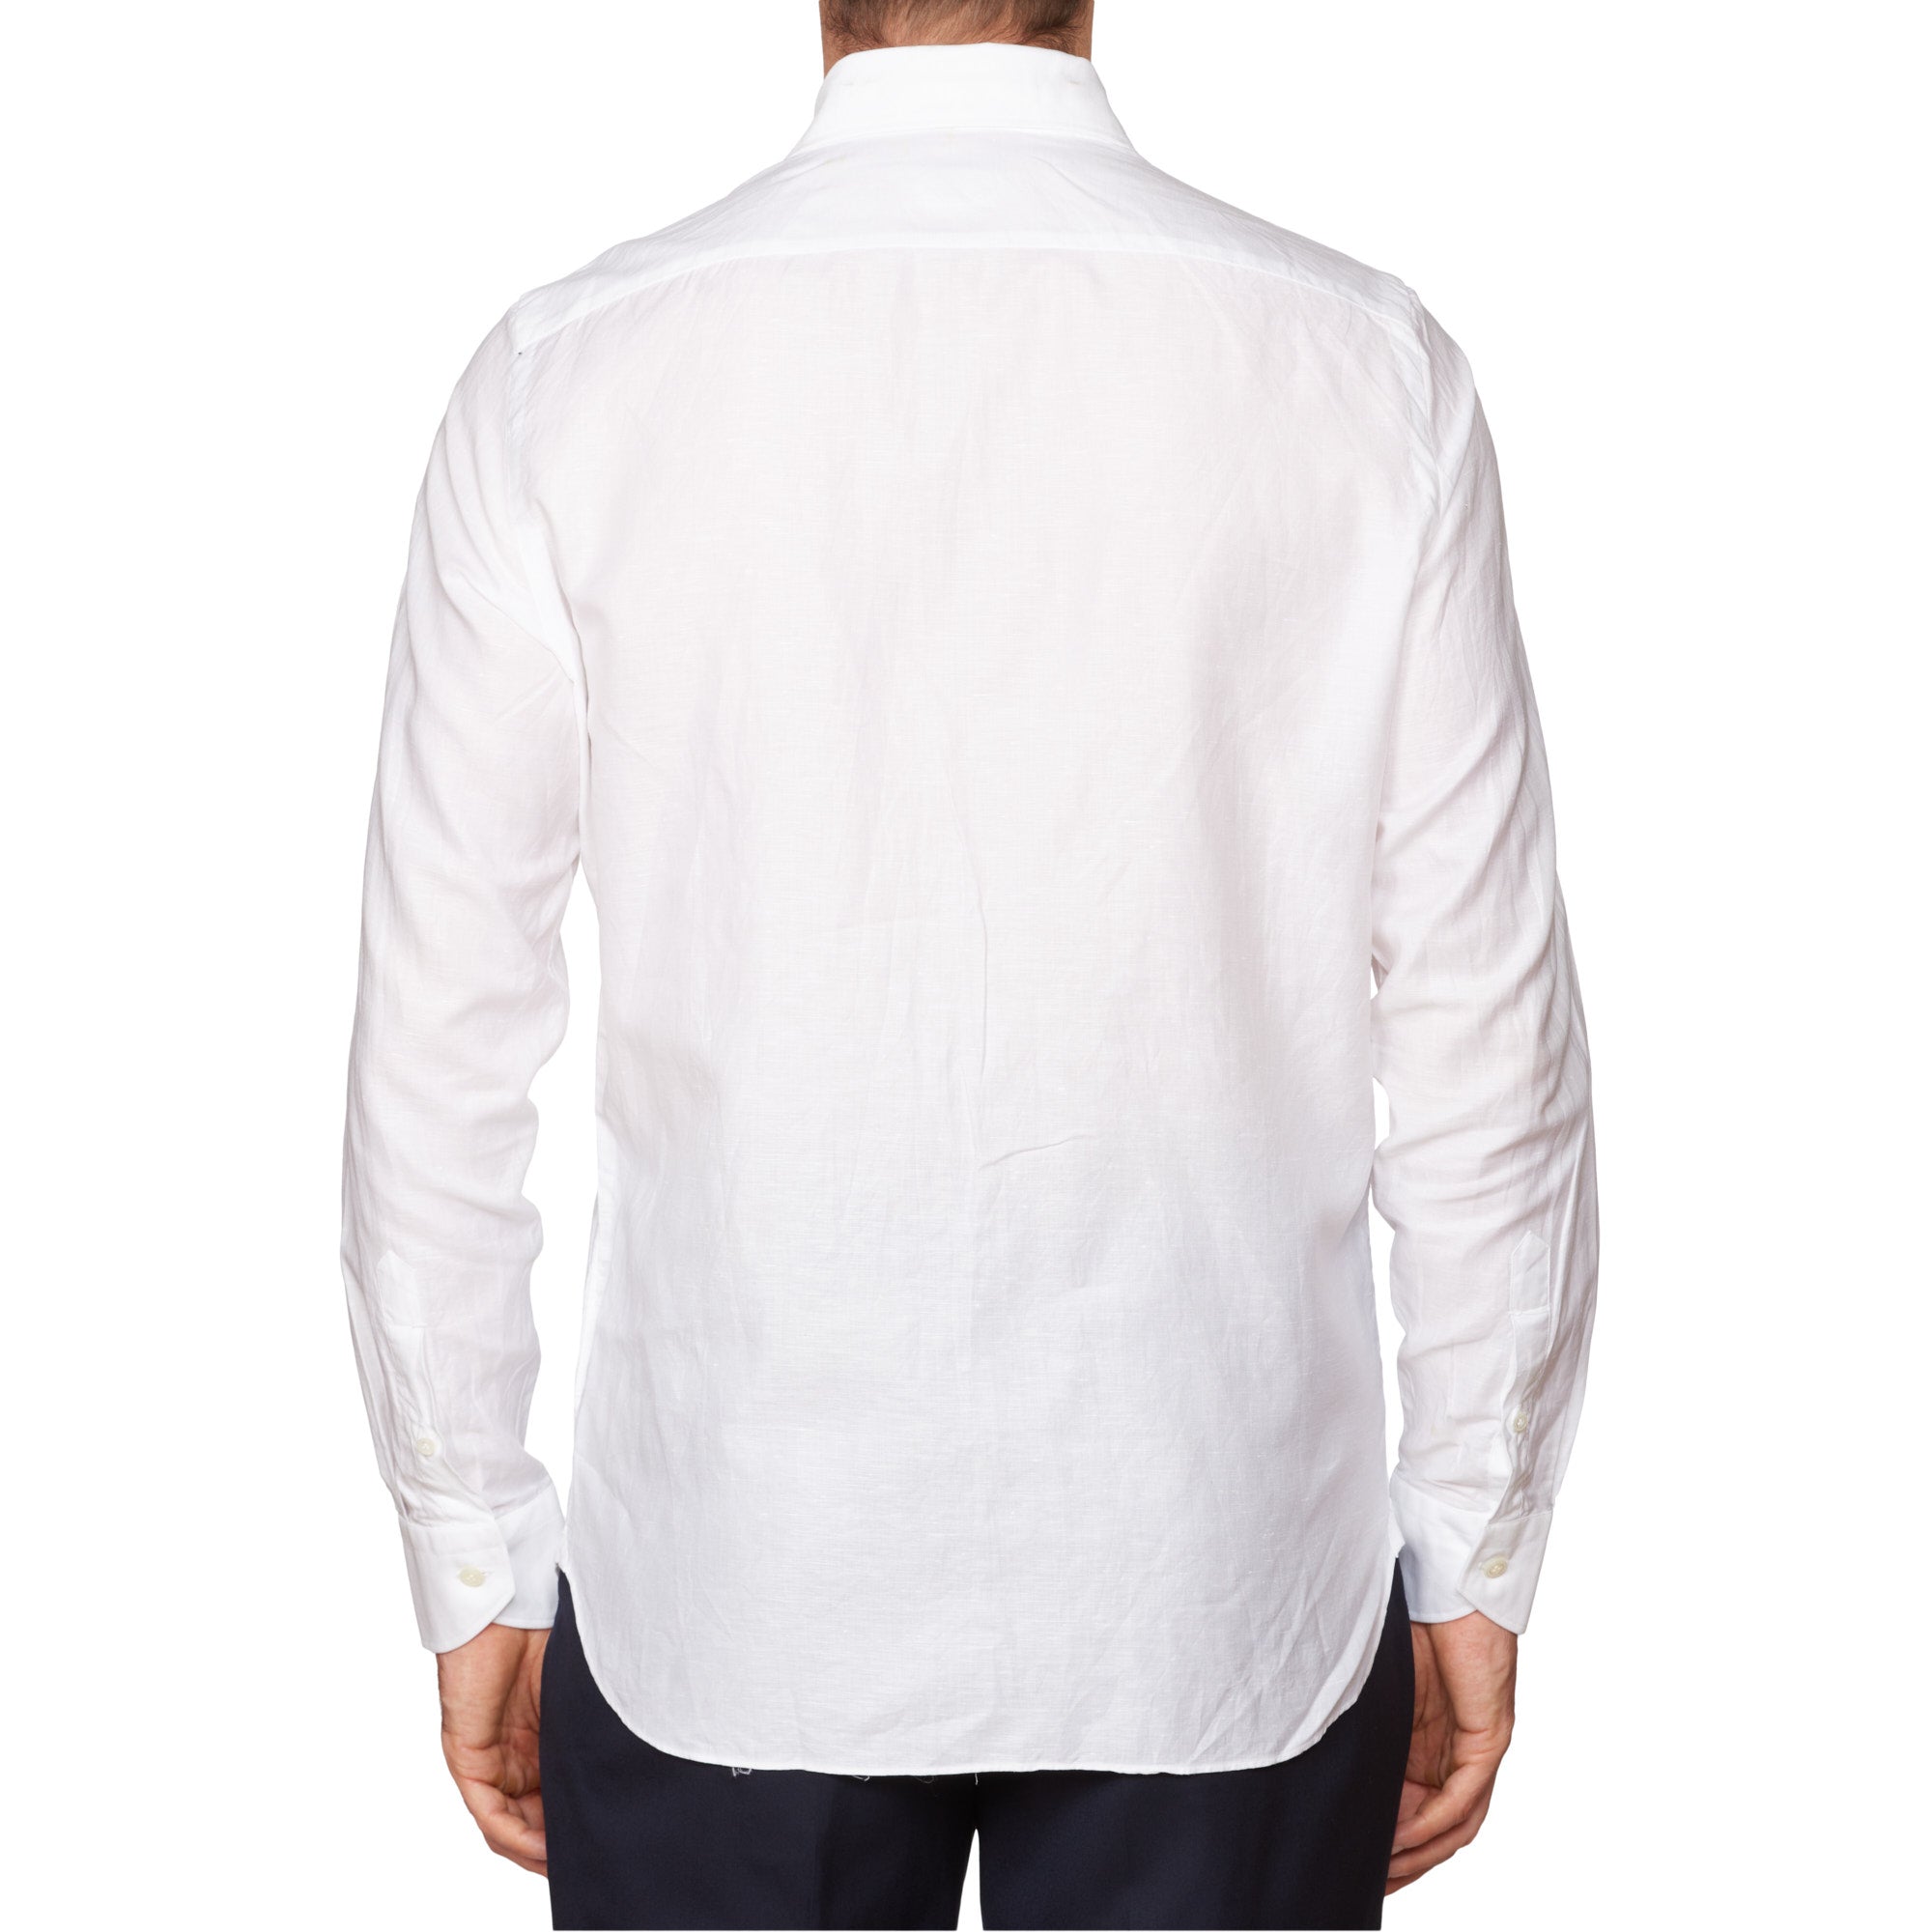 VINCENZO DI RUGGIERO Handmade White Cotton-Linen Dress Shirt EU 40 US 15.75 VINCENZO DI RUGGIERO